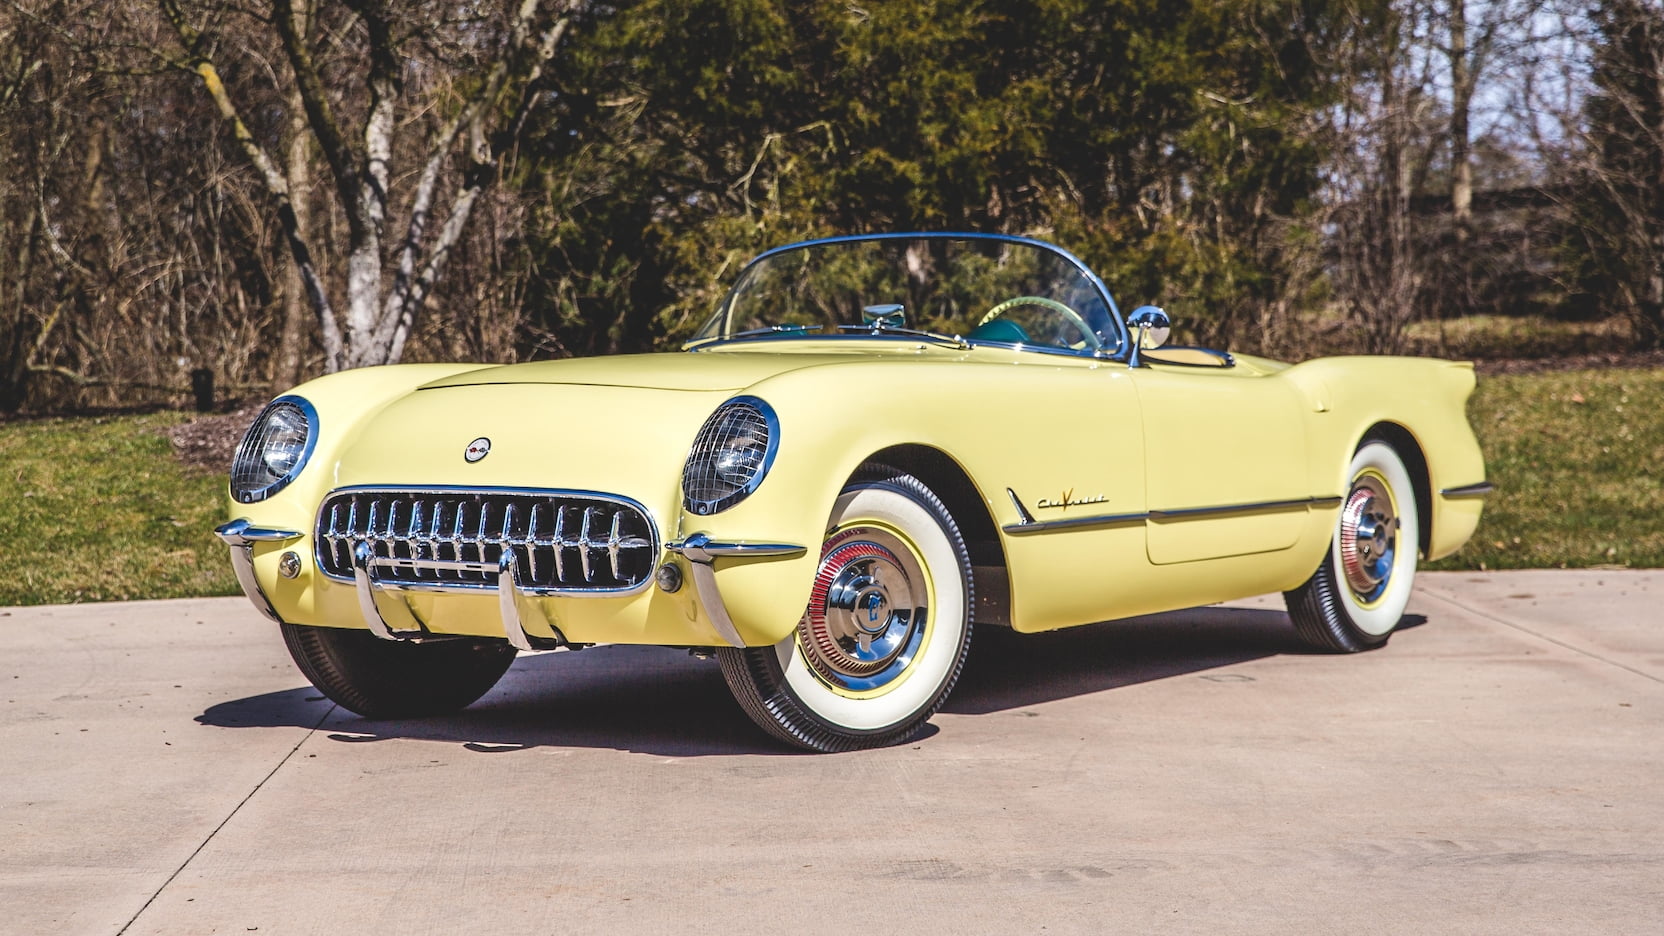 Corvette Of The Day: 1955 Chevrolet Corvette